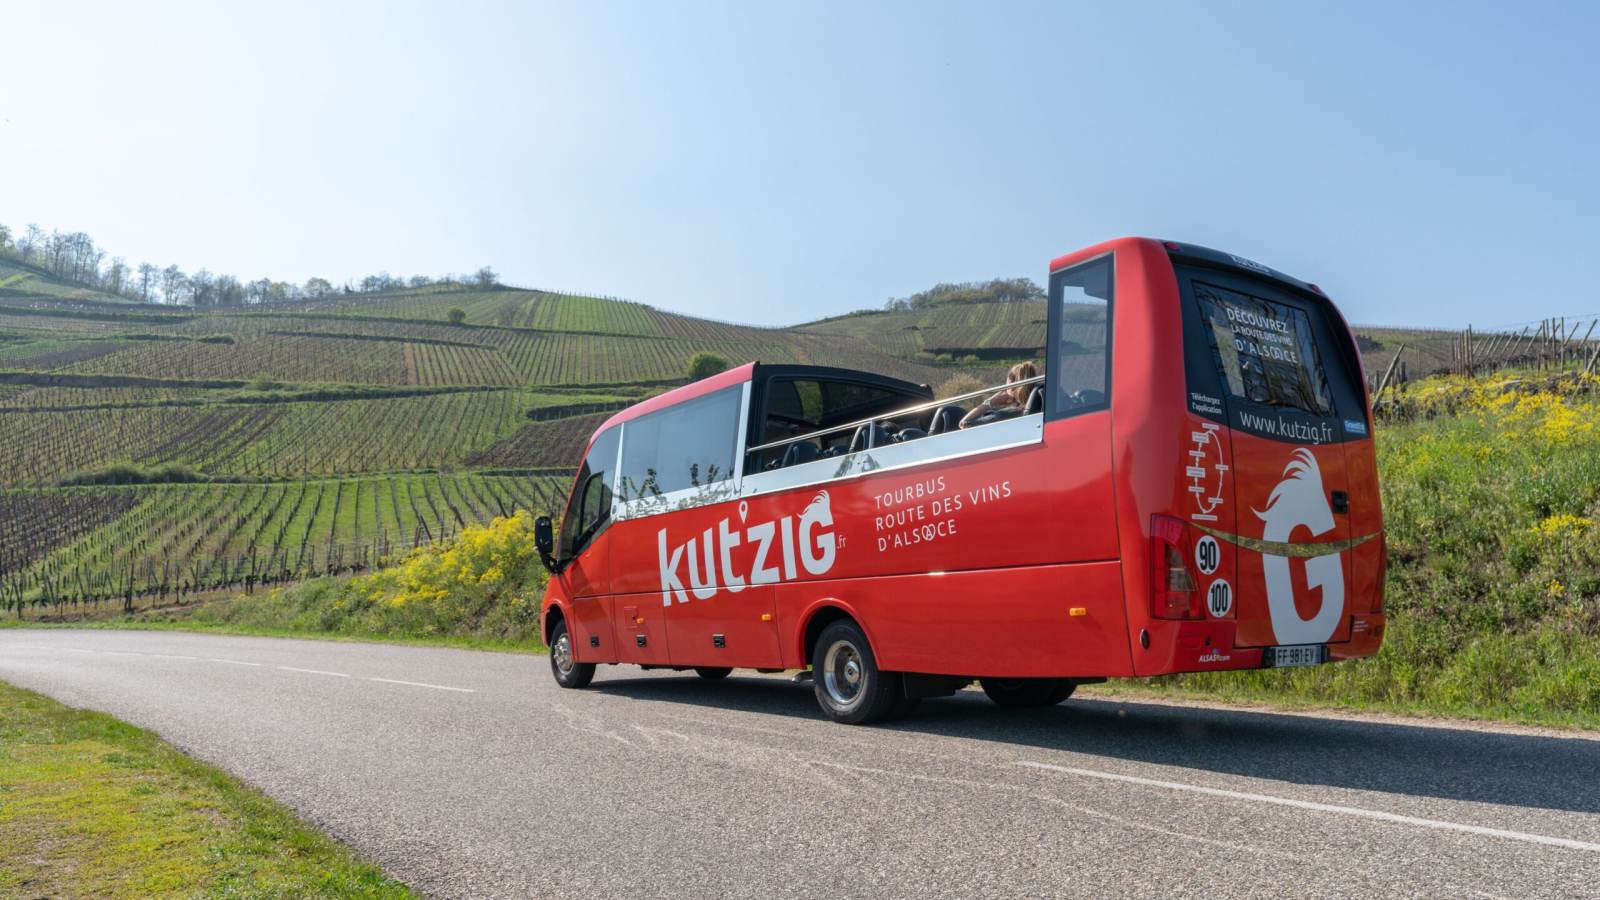 Bus-cabriolet panoramique Kut'Zig sillonnant la Route des Vins d'Alsace